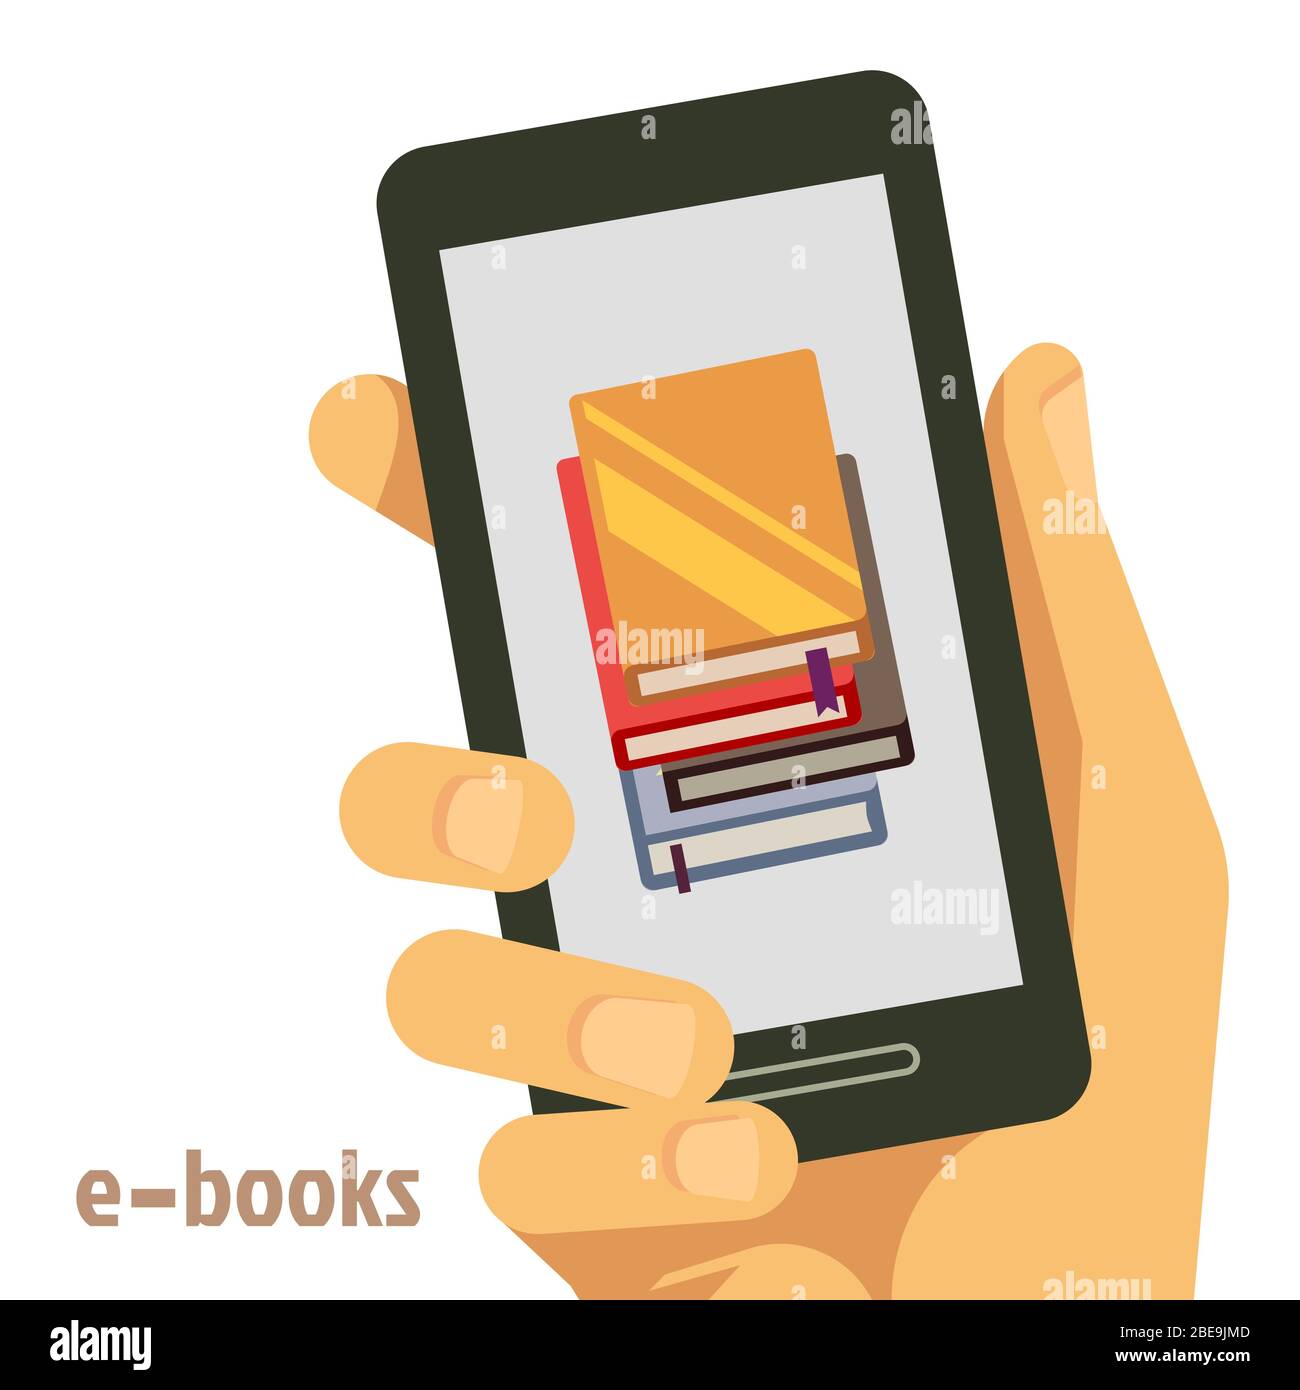 Flaches E-Book-Konzept mit Smartphone in der Hand. E-Book-Bibliothek auf Smartphone-Gerät, Vektorgrafik Stock Vektor